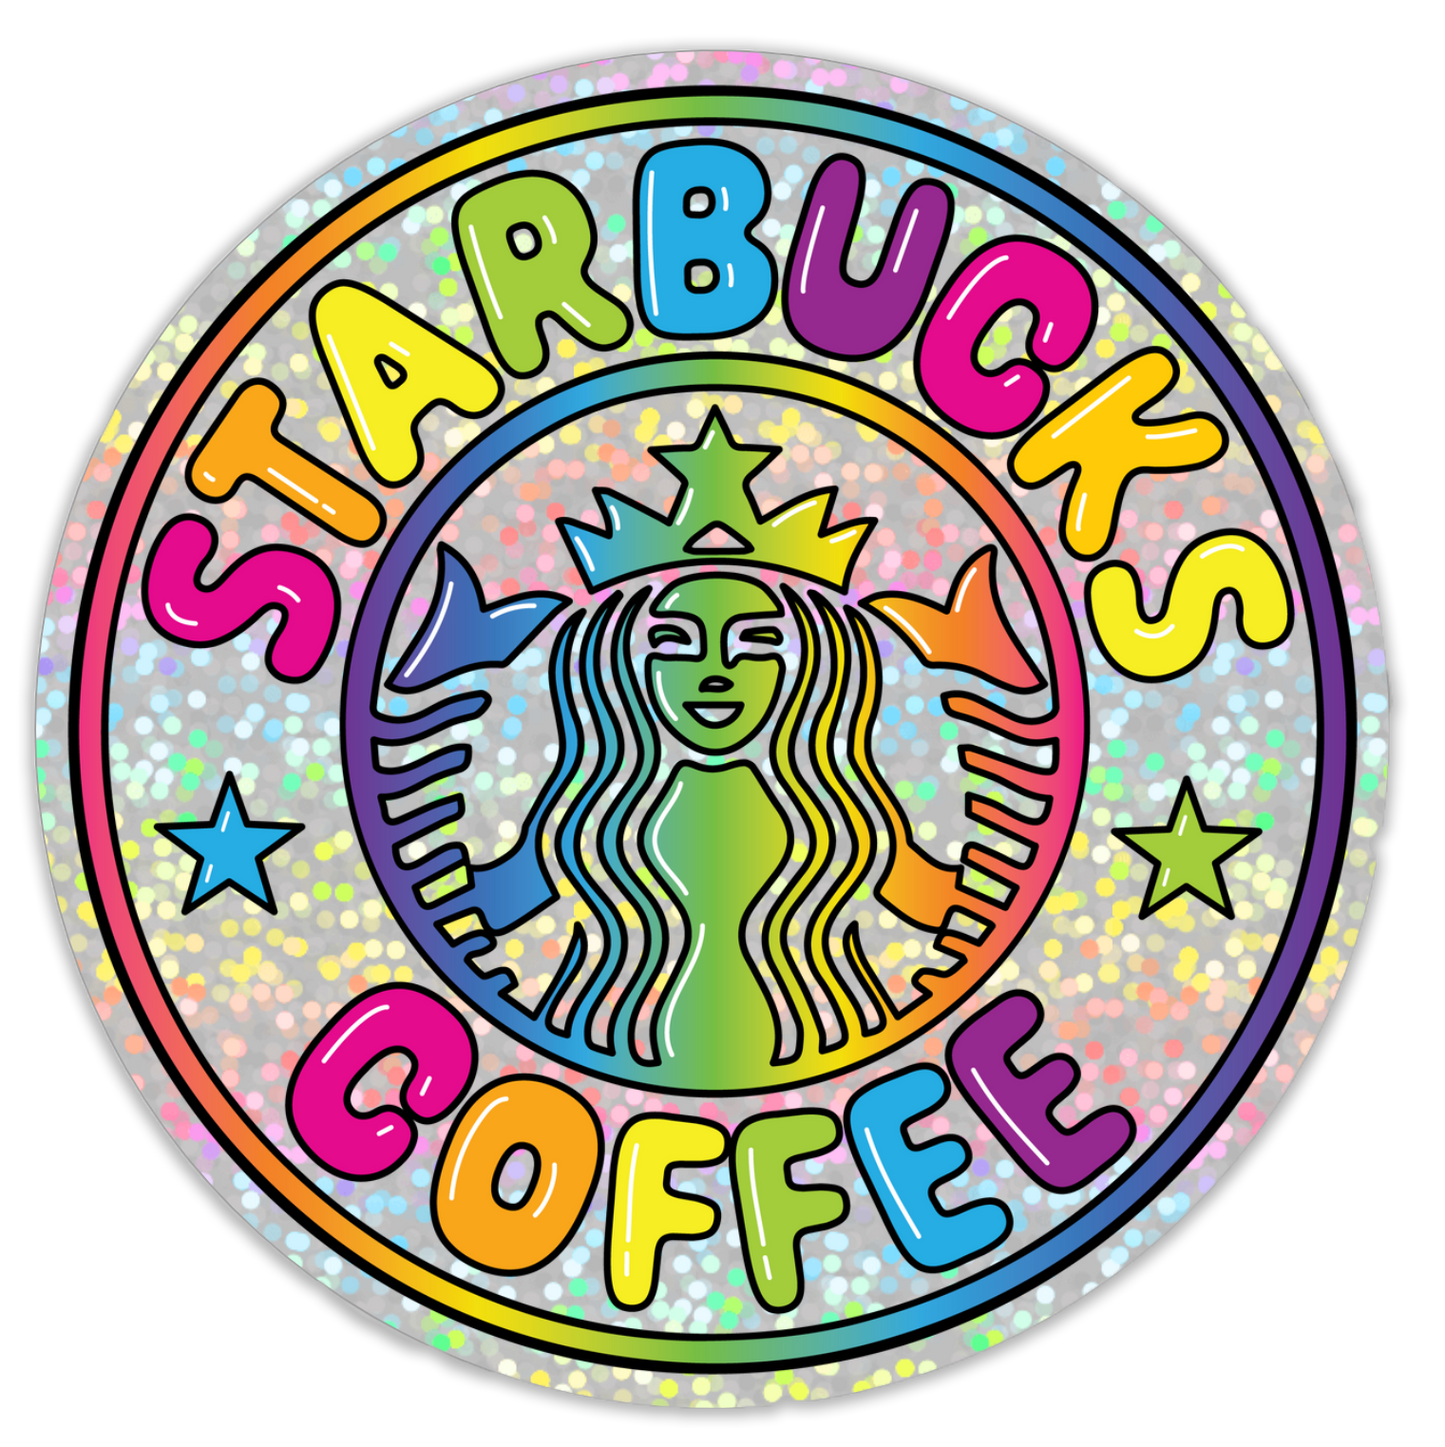 Lisa Frank Inspired Holographic Starbucks Sticker, 3in.